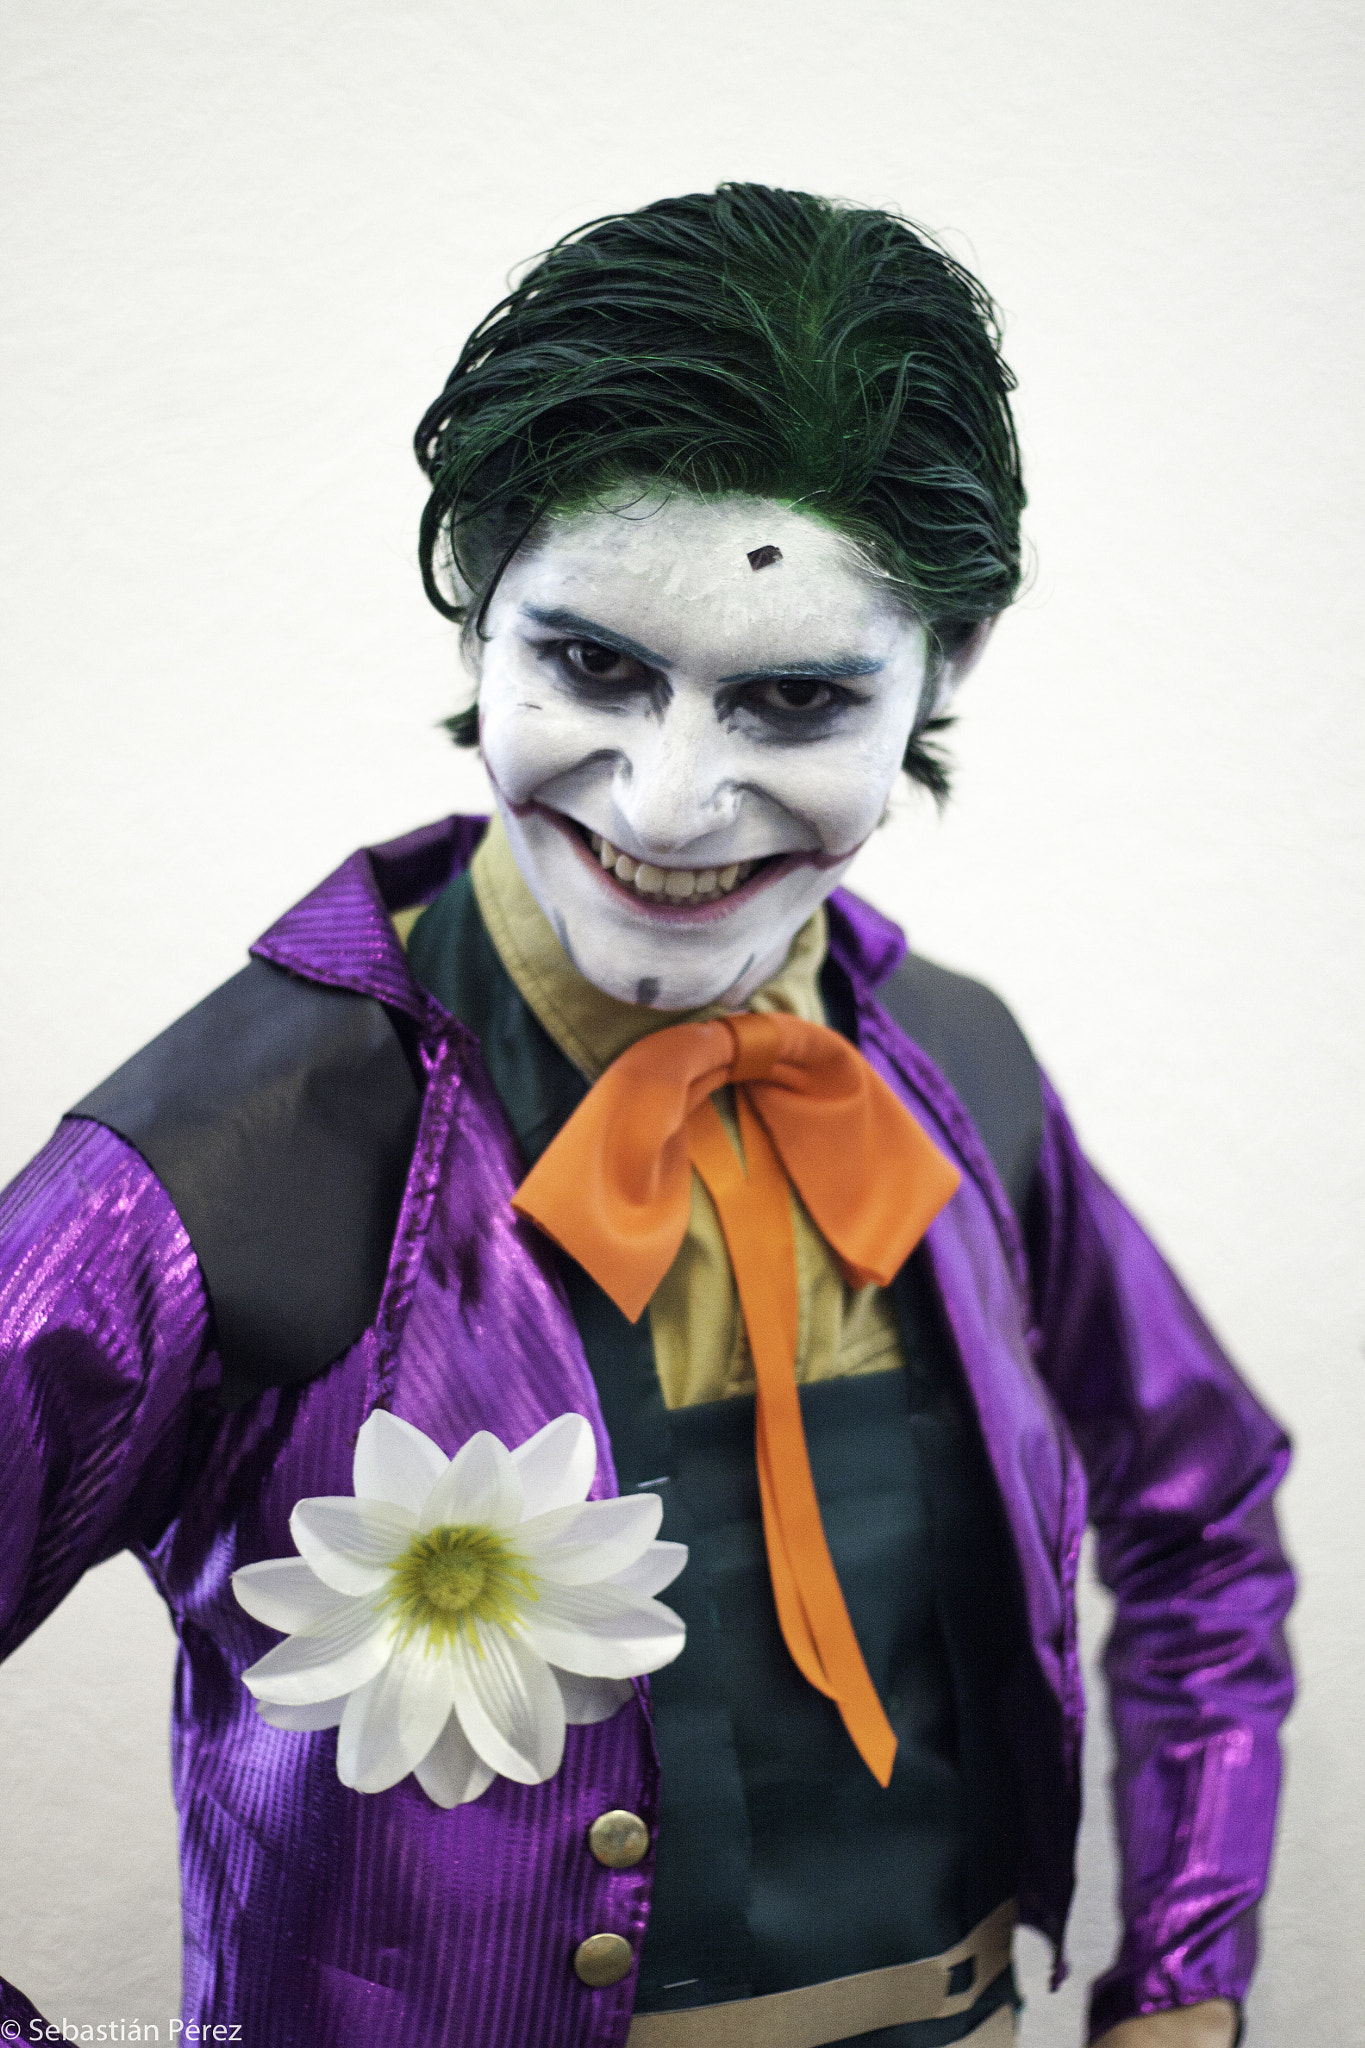 Canon EOS 50D sample photo. Joker photography